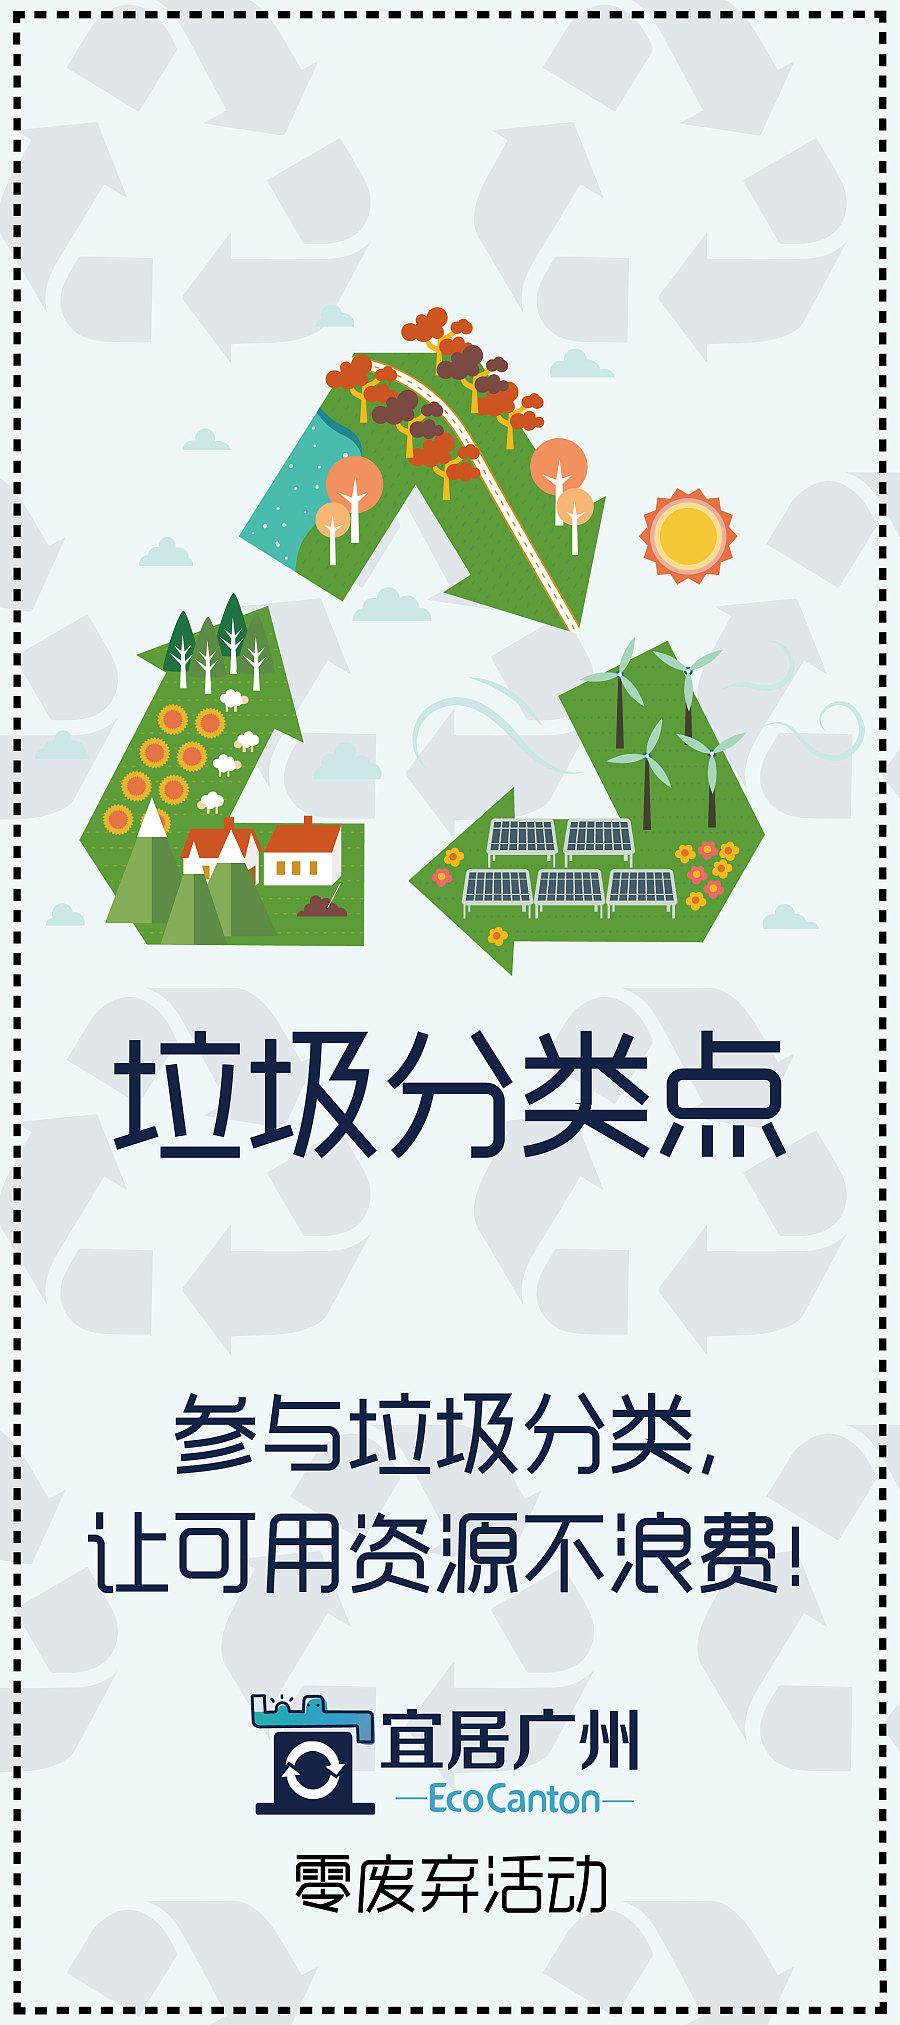 【原创】宜居广州垃圾分类点x展架之项目分析